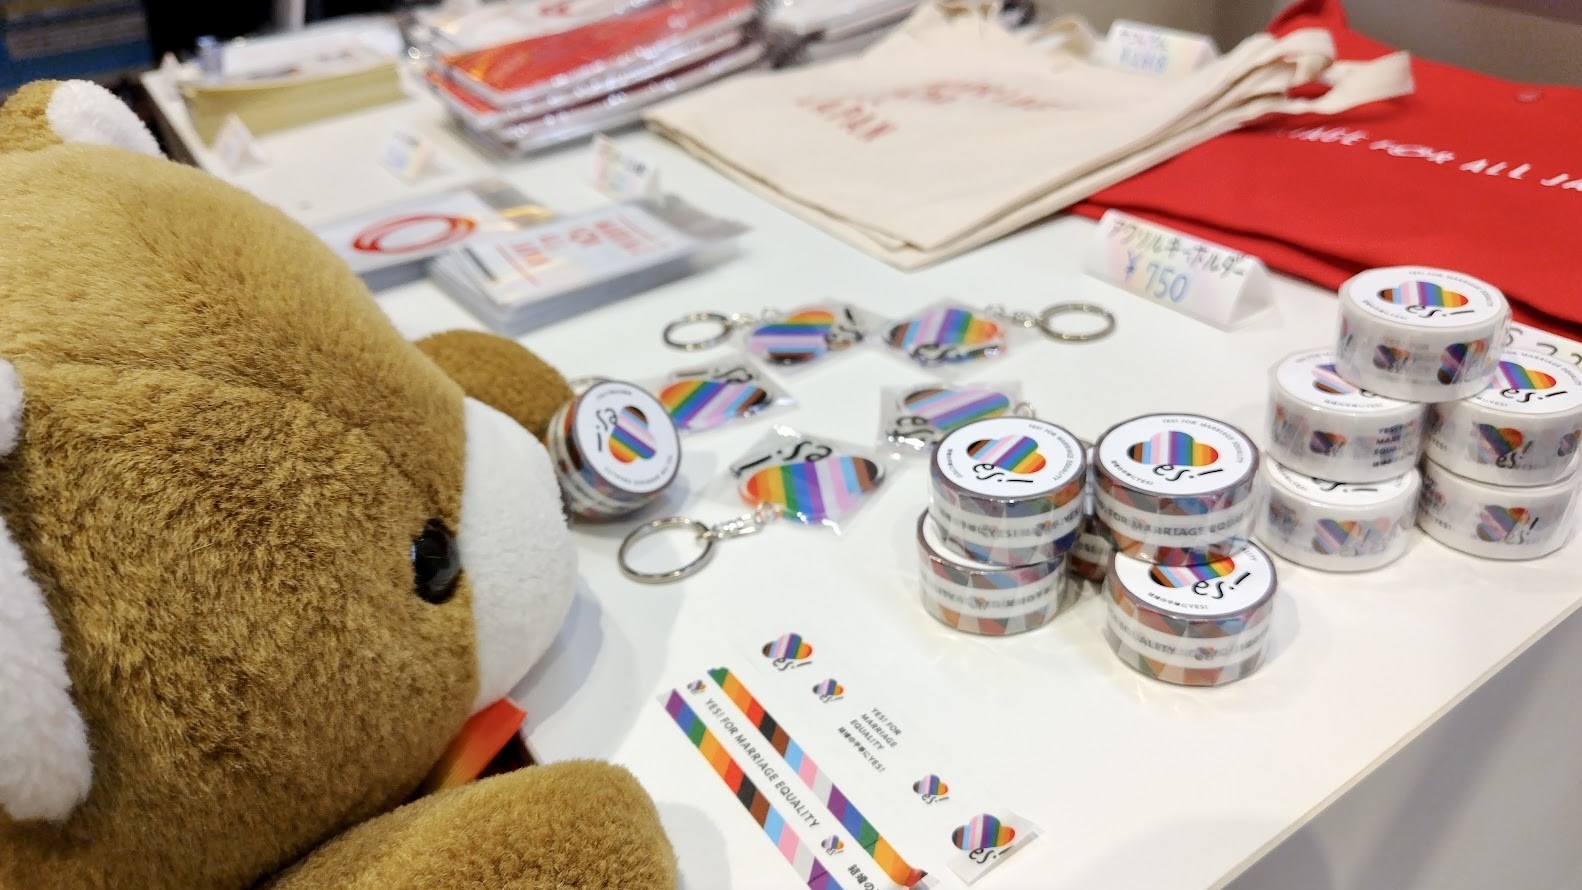 「結婚の平等にYES！」と書かれたマスキングテープや、YES！のロゴのキーホルダーが飾られている。 奥には、「MARRIAGE　FOR　ALL　JAPAN」と書かれたサコッシュも並んでいる。 クマは、マスキングテープを手に取り、珍しそうに眺めている。